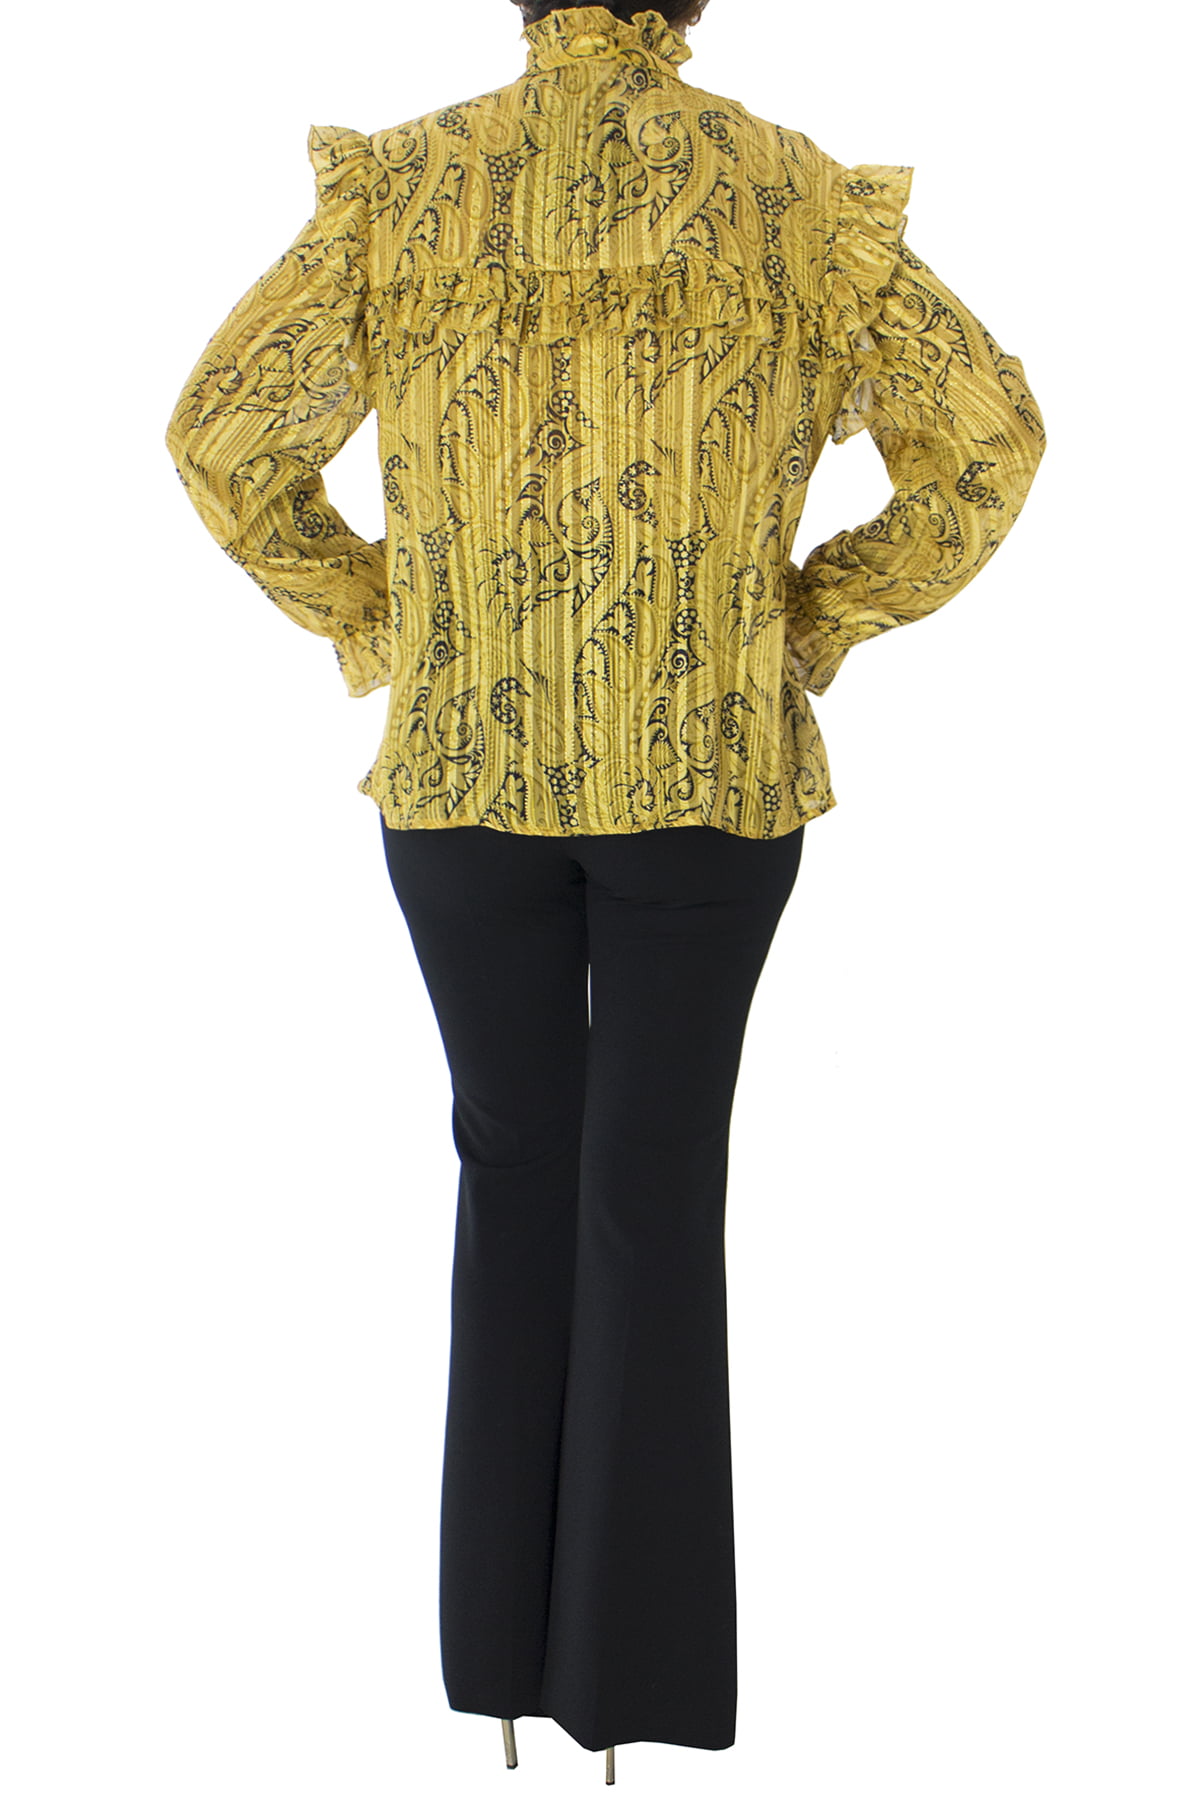 Camicia donna in fantasia paisley e fili lurex oro mezzo collo con rouches e sul fondo maniche